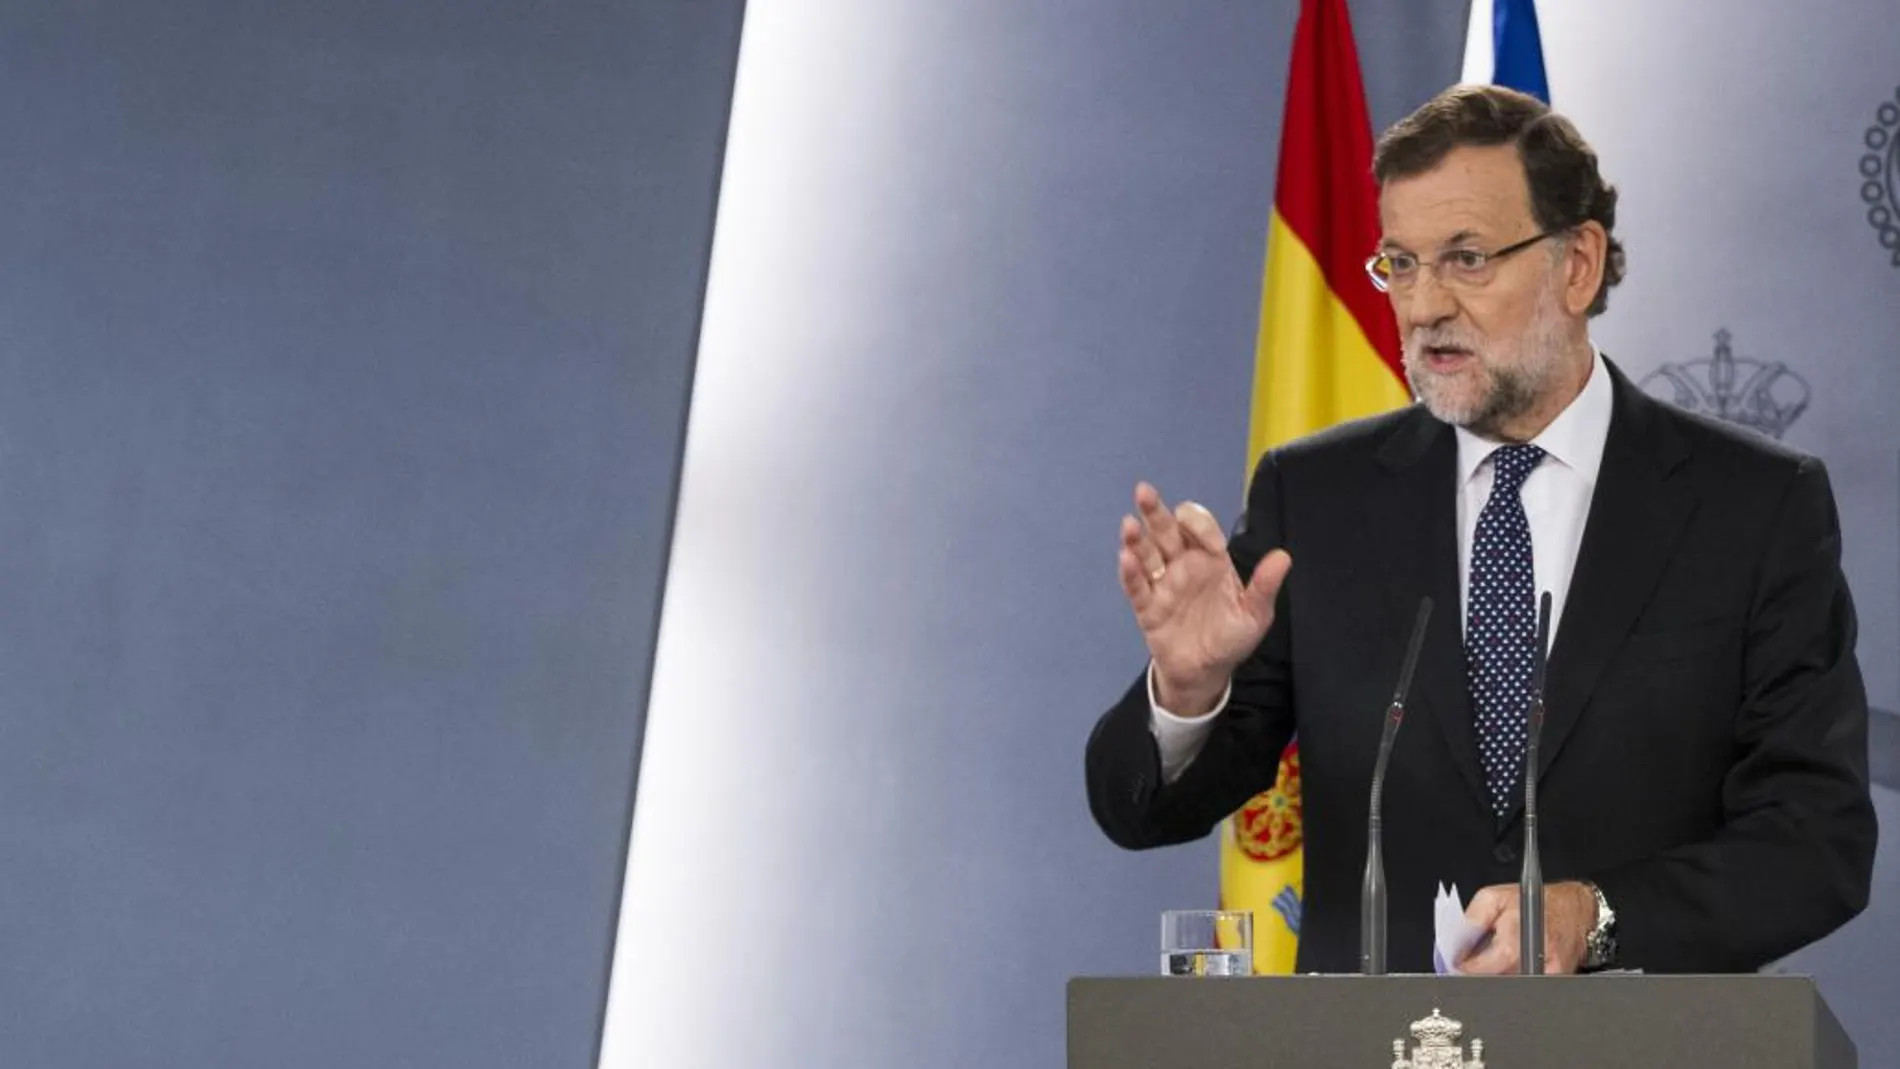 Declaración Institucional del presidente del Gobierno , Mariano Rajoy , en respuesta al acuerdo entre Junts pel sí y la CUP para la independencia de Cataluña